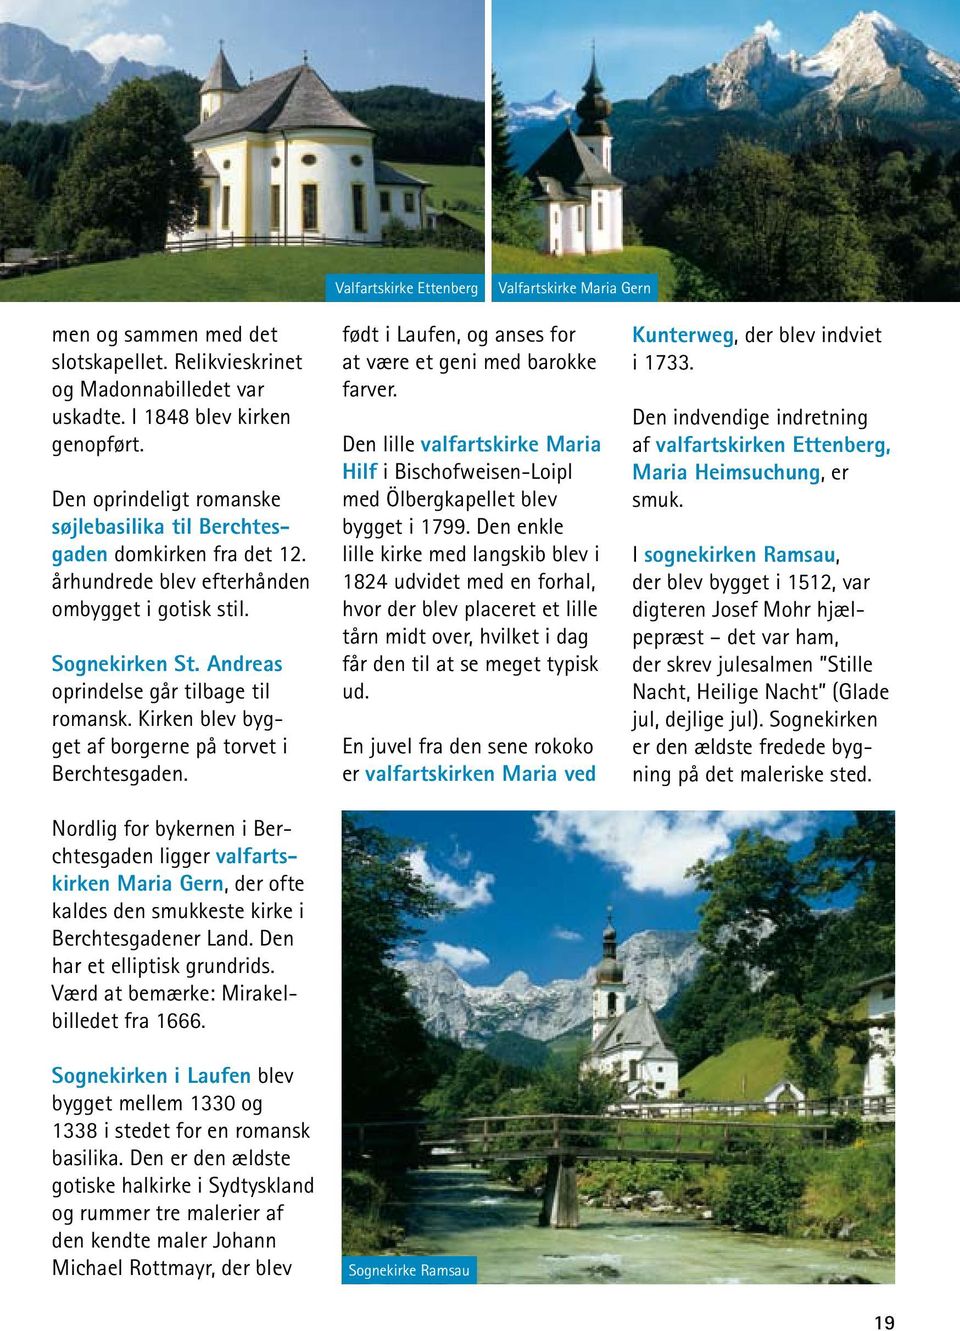 Kirken blev bygget af borgerne på torvet i Berchtesgaden. Nordlig for bykernen i Berchtesgaden ligger valfartskirken Maria Gern, der ofte kaldes den smukkeste kirke i Berchtesgadener Land.